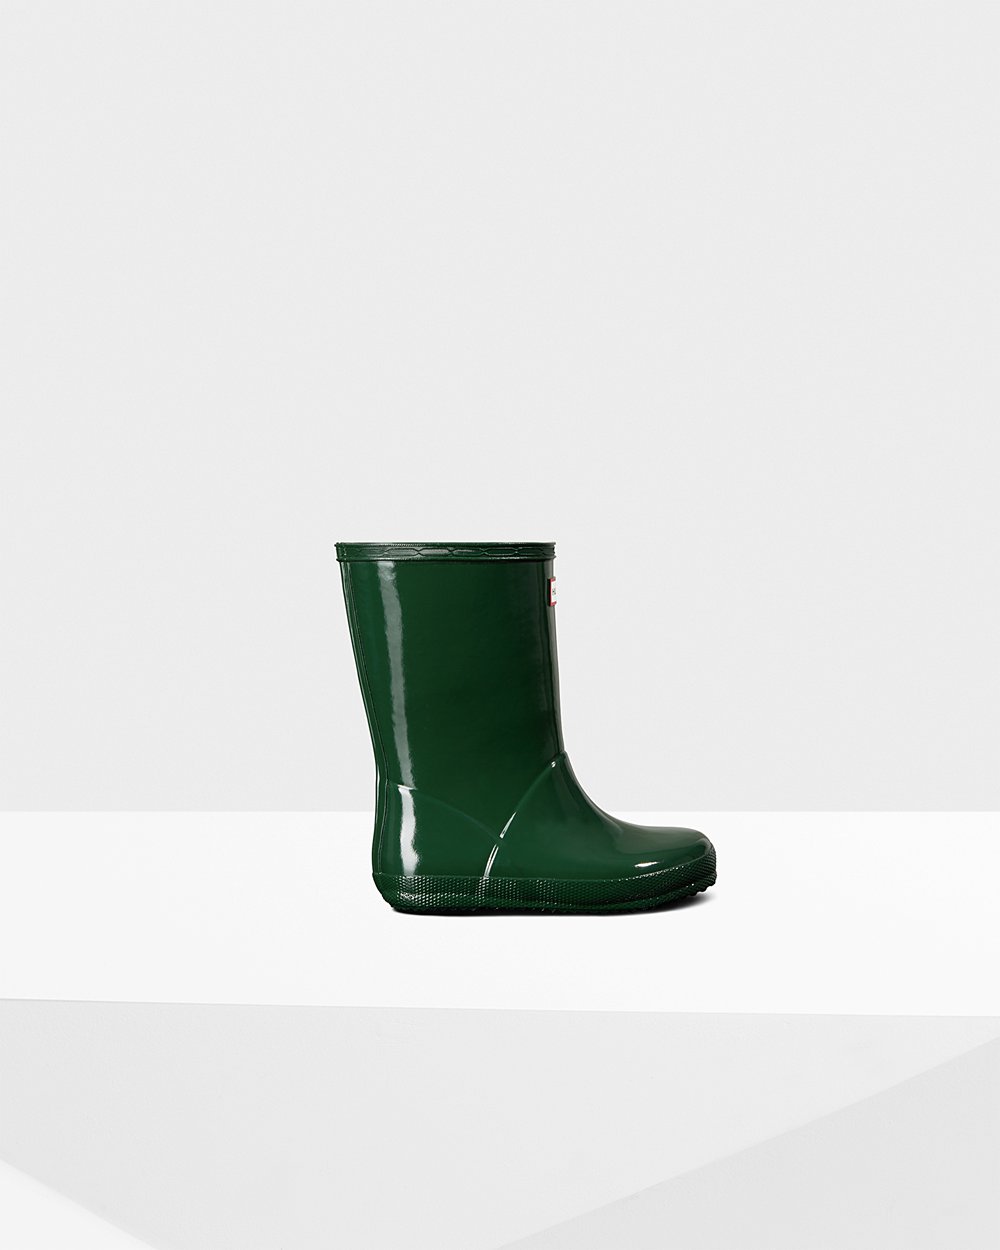 Kids Rain Boots - Hunter Original First Classic Gloss (05VUYKOLF) - Green